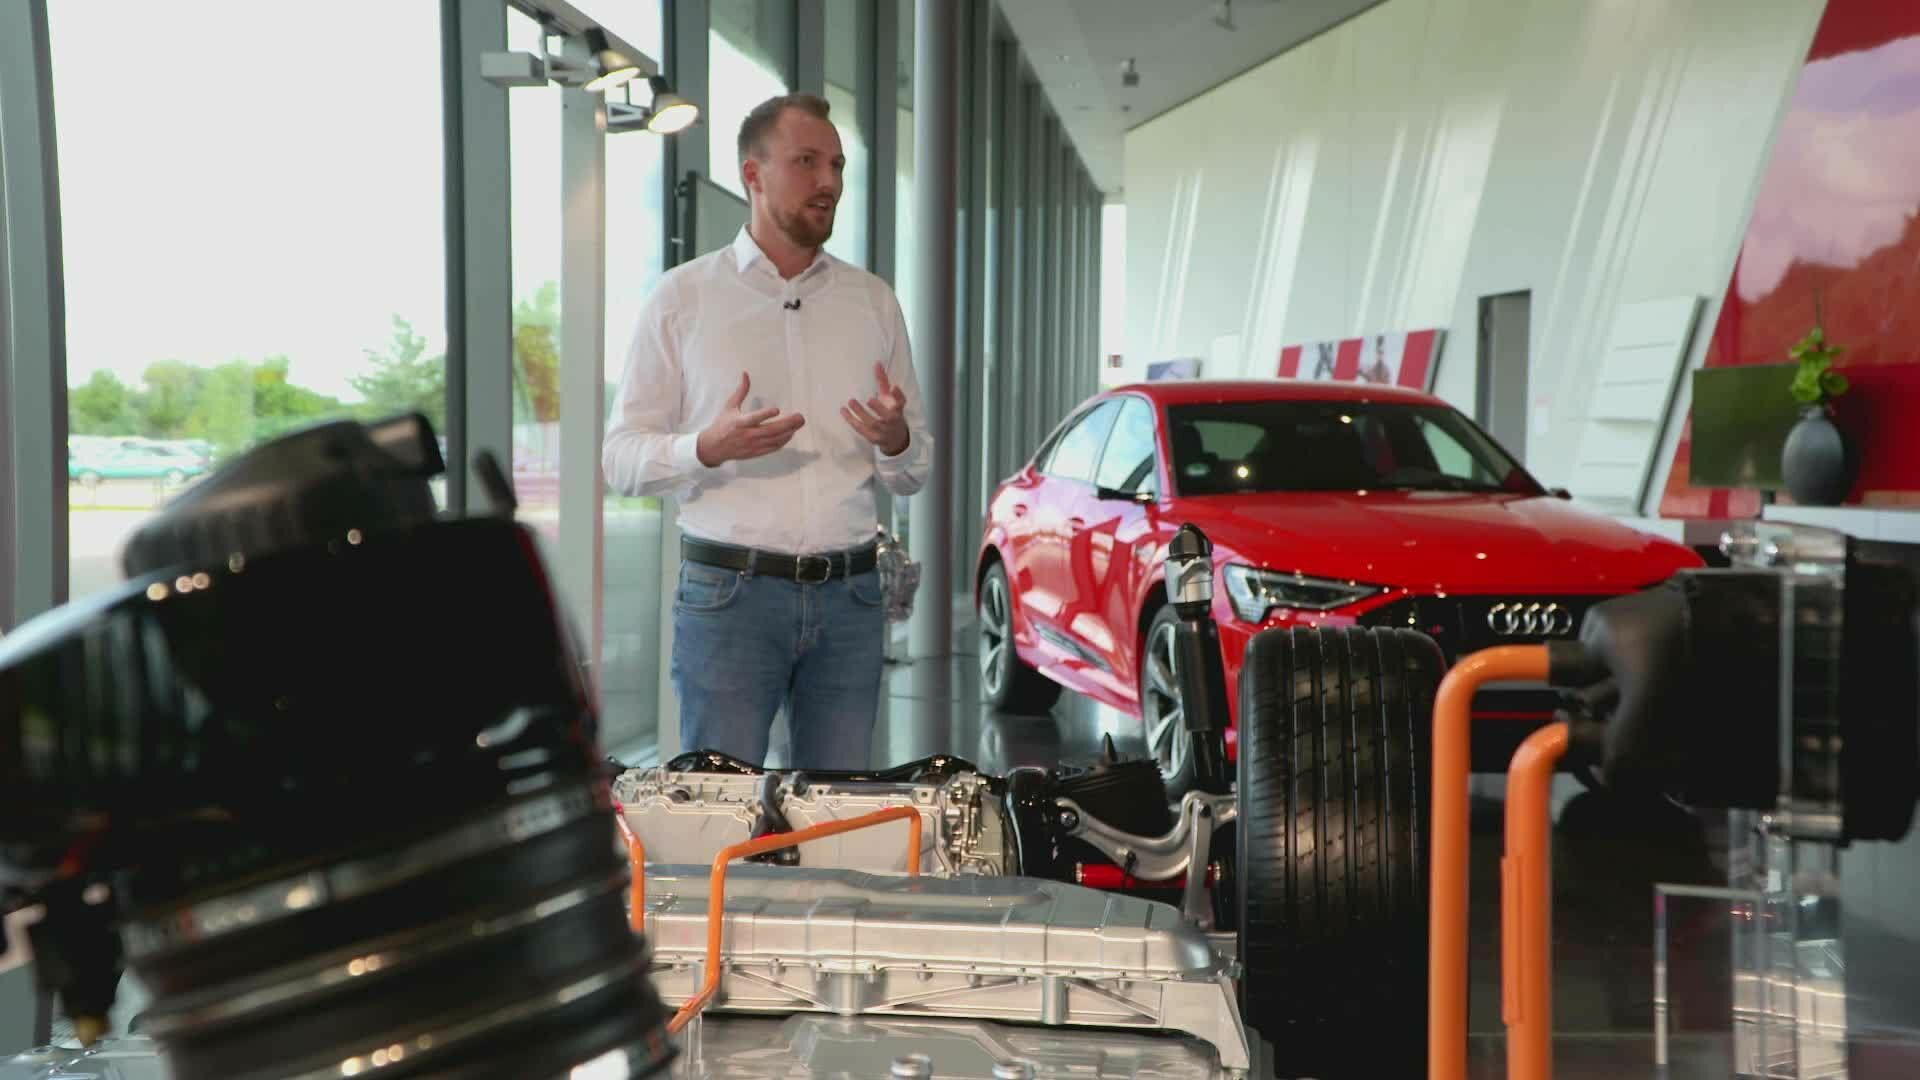 Audi quattro setzt Maßstäbe im Zeitalter der Elektromobilität